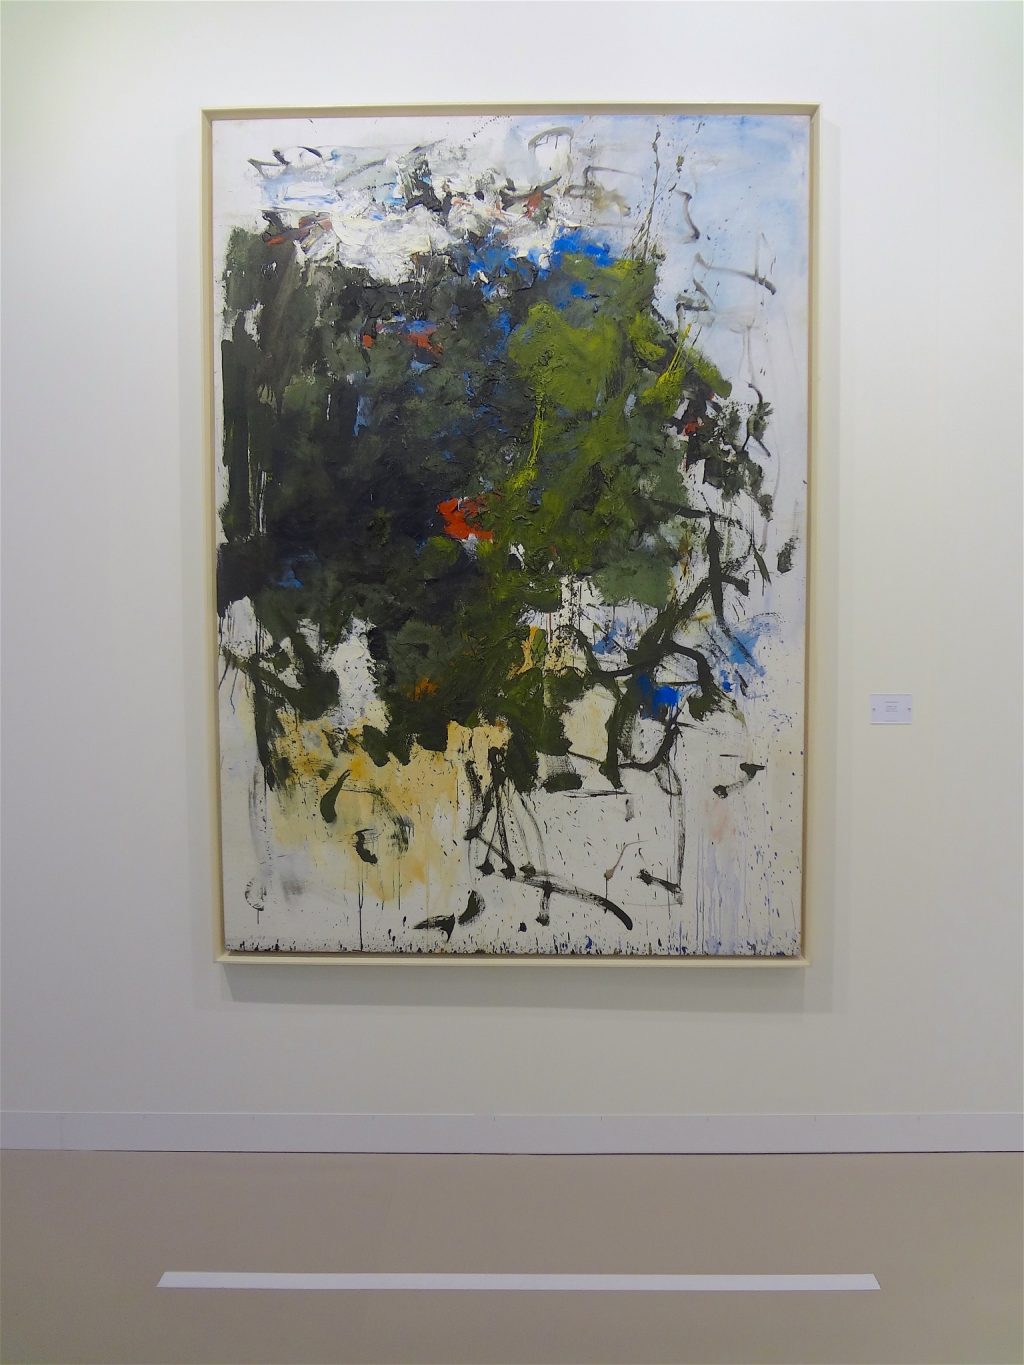 ジョアン・ミッチェル Joan Mitchell “Untitled” 1964, Oil on canvas, 200.3 x 141 cm (Max Hetzler, 2013)